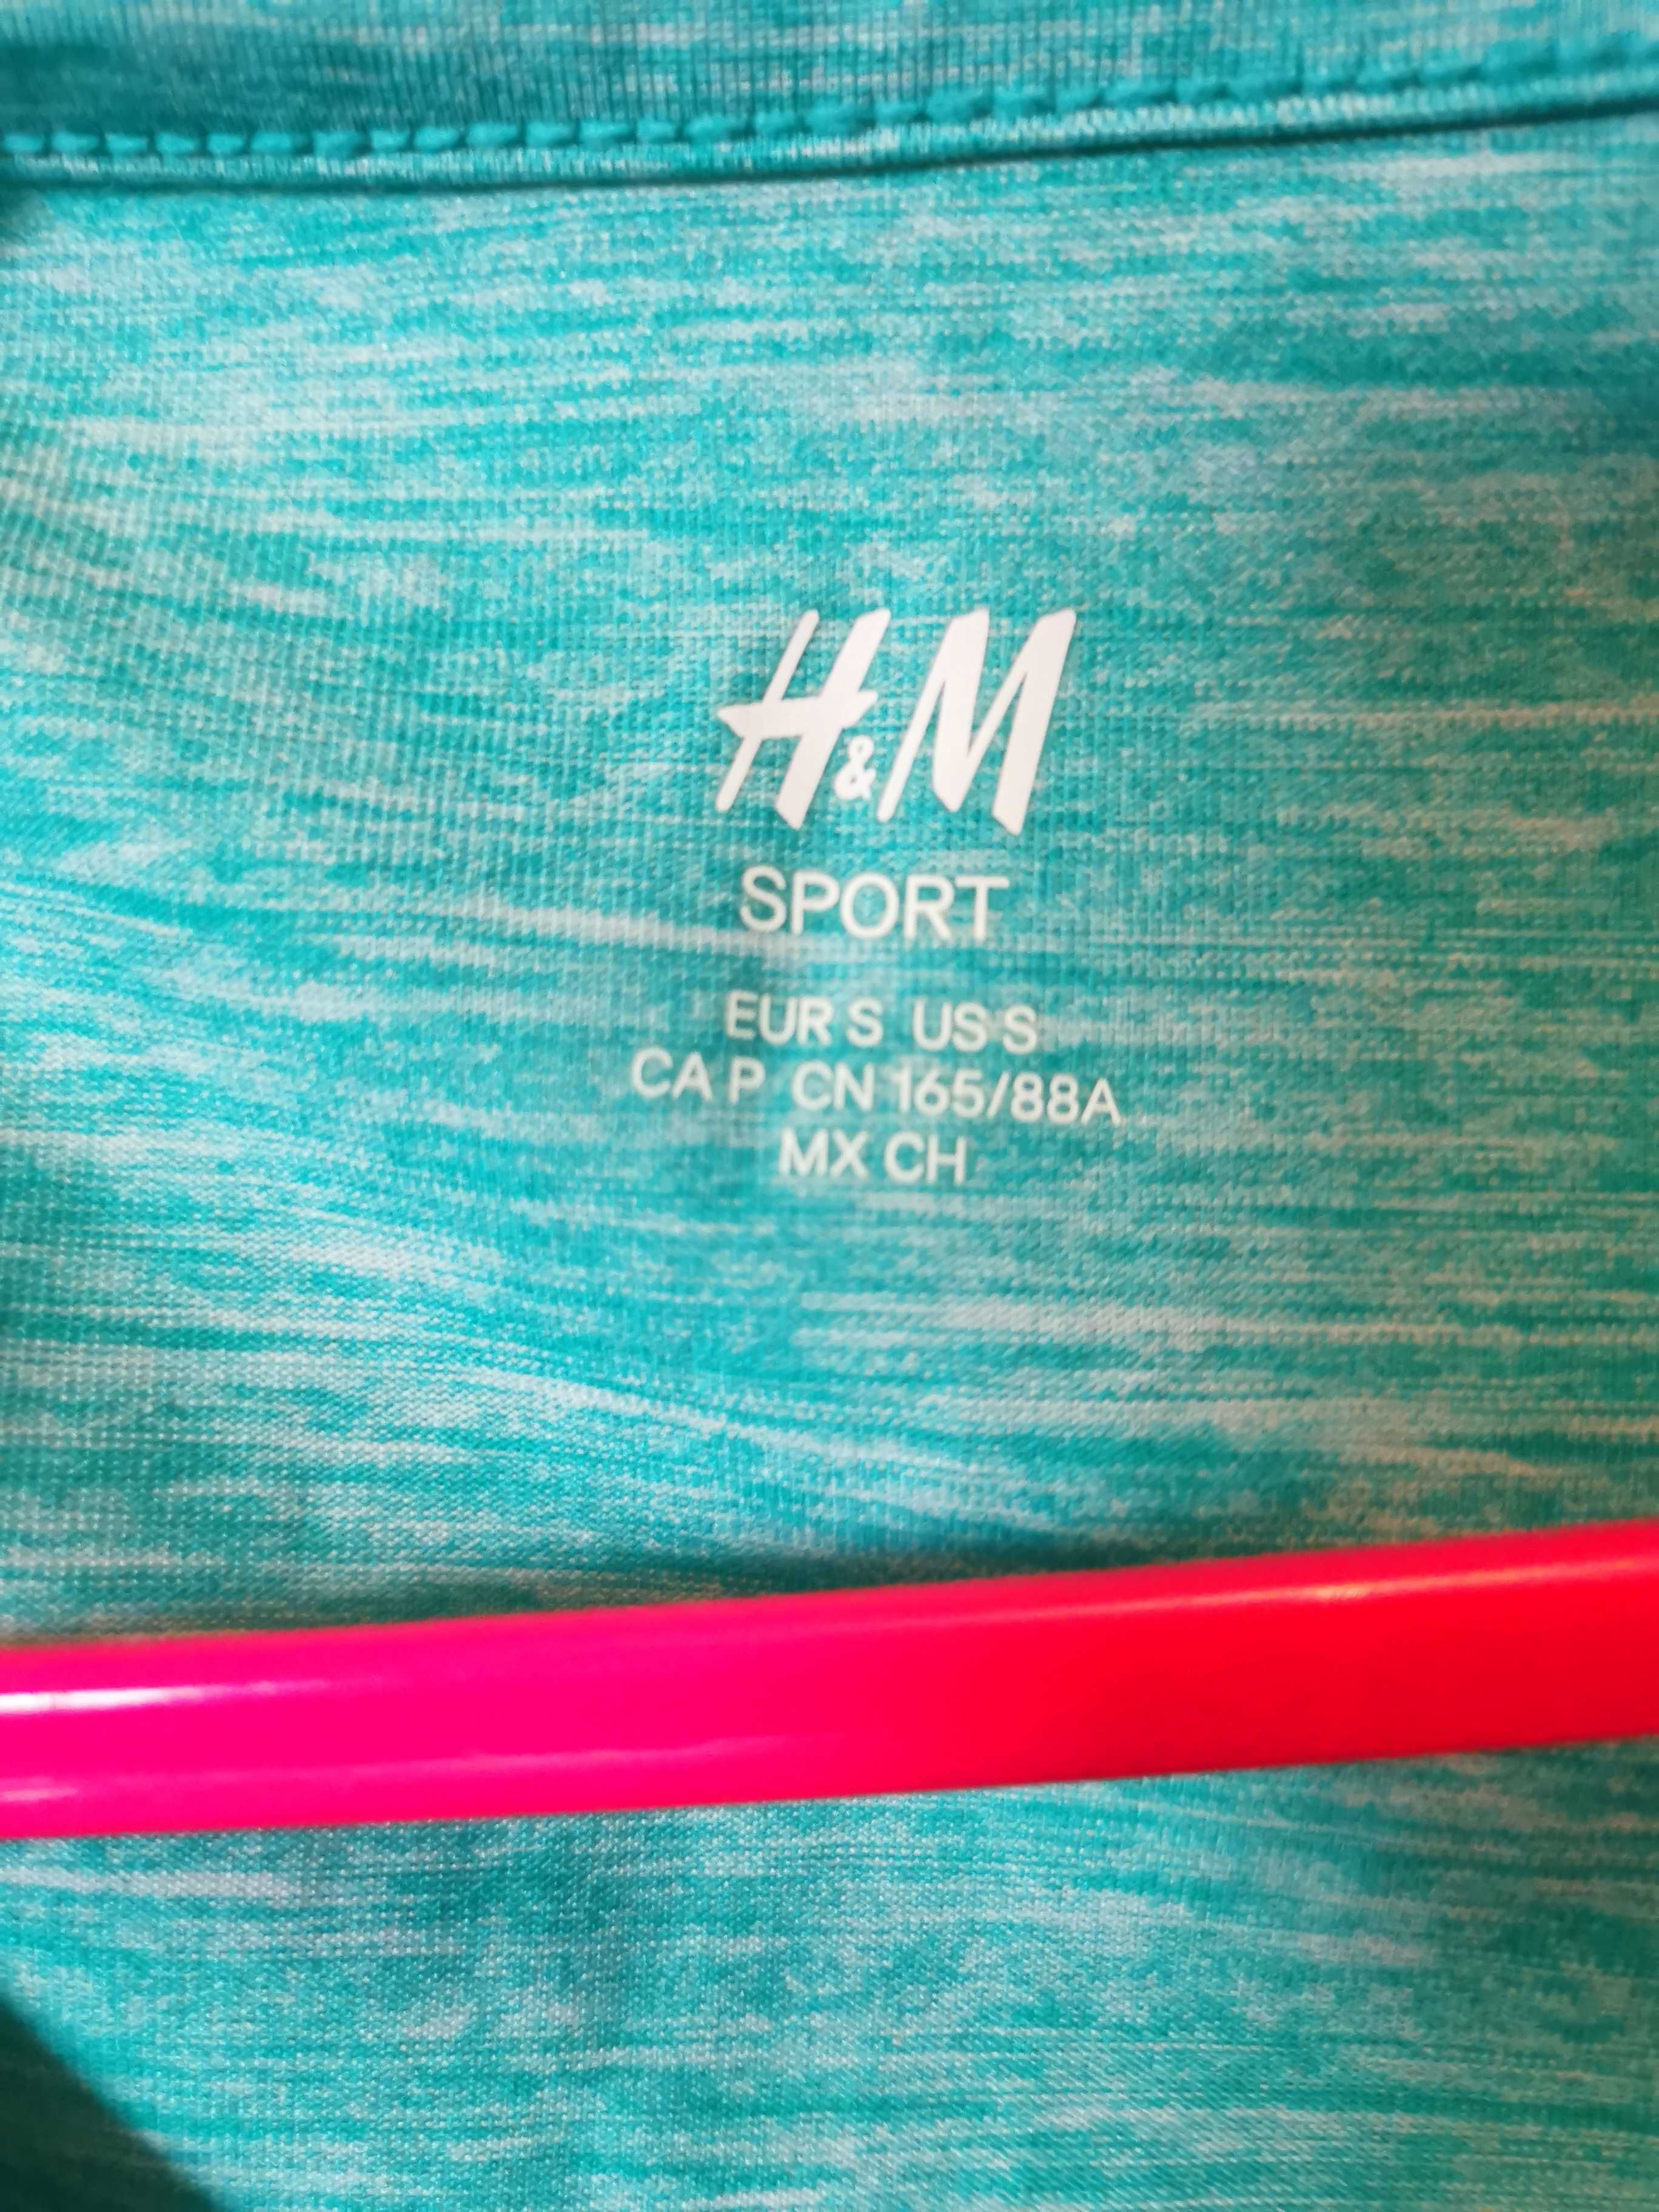 Футболка H&M sport спорт размер S